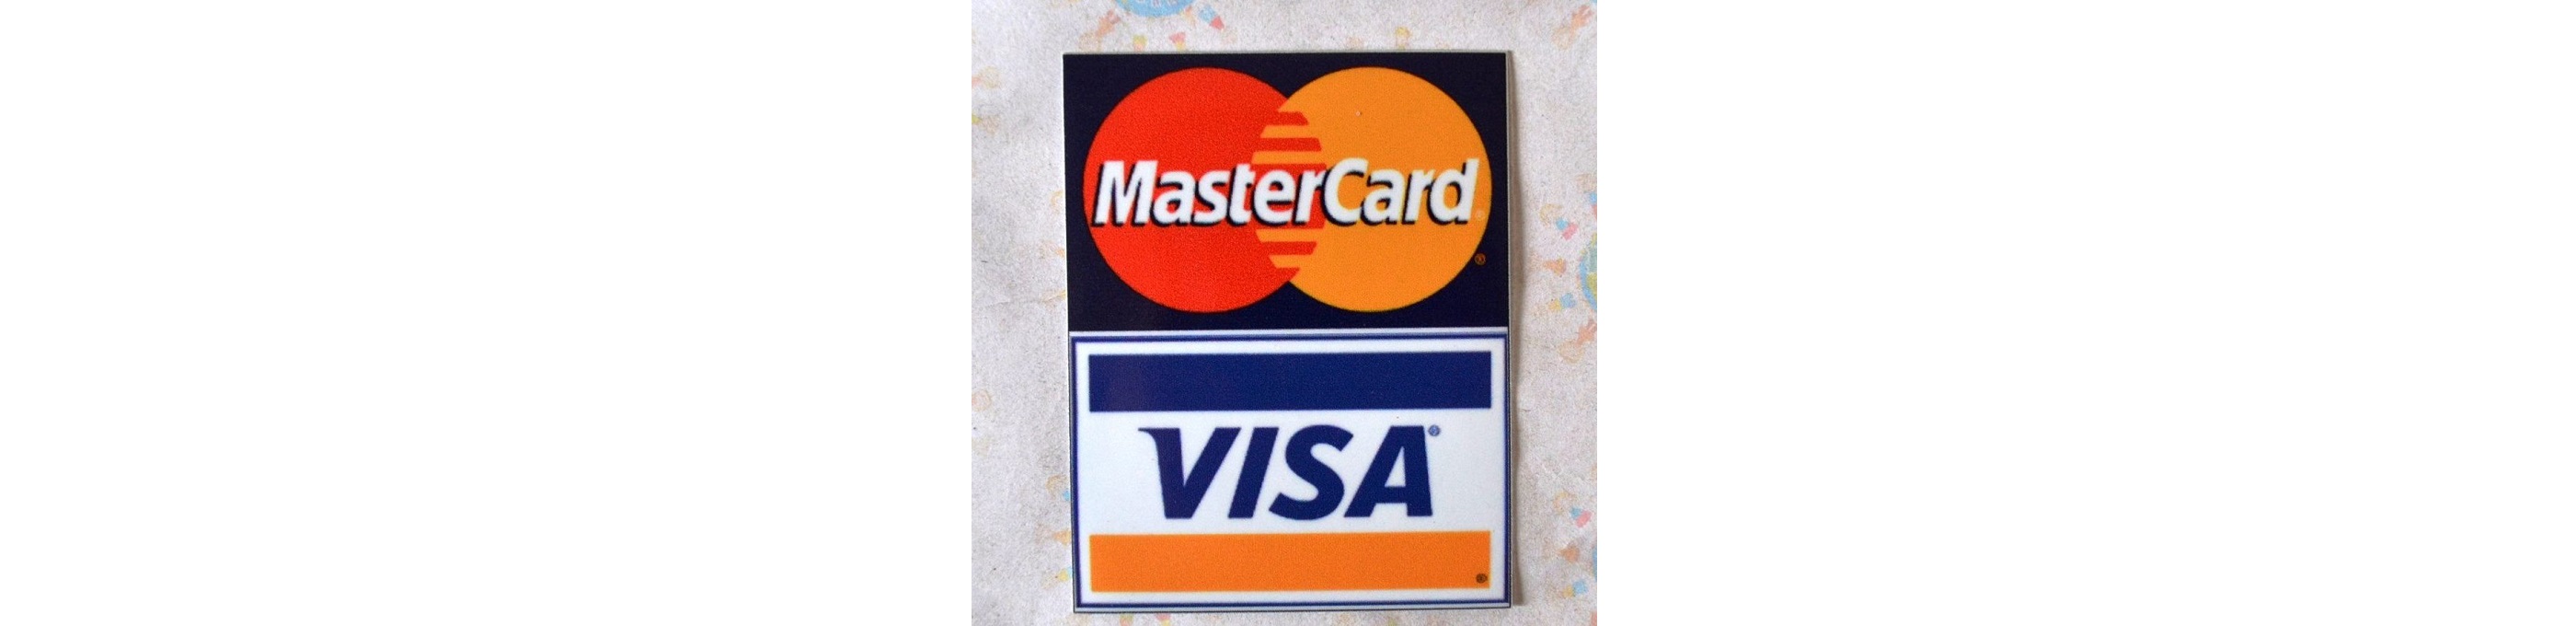 В последнее время появилось множество слухов касательно отмены переводов в сбербанке через мобильный телефон, а также отключения Visa и Mastercard.